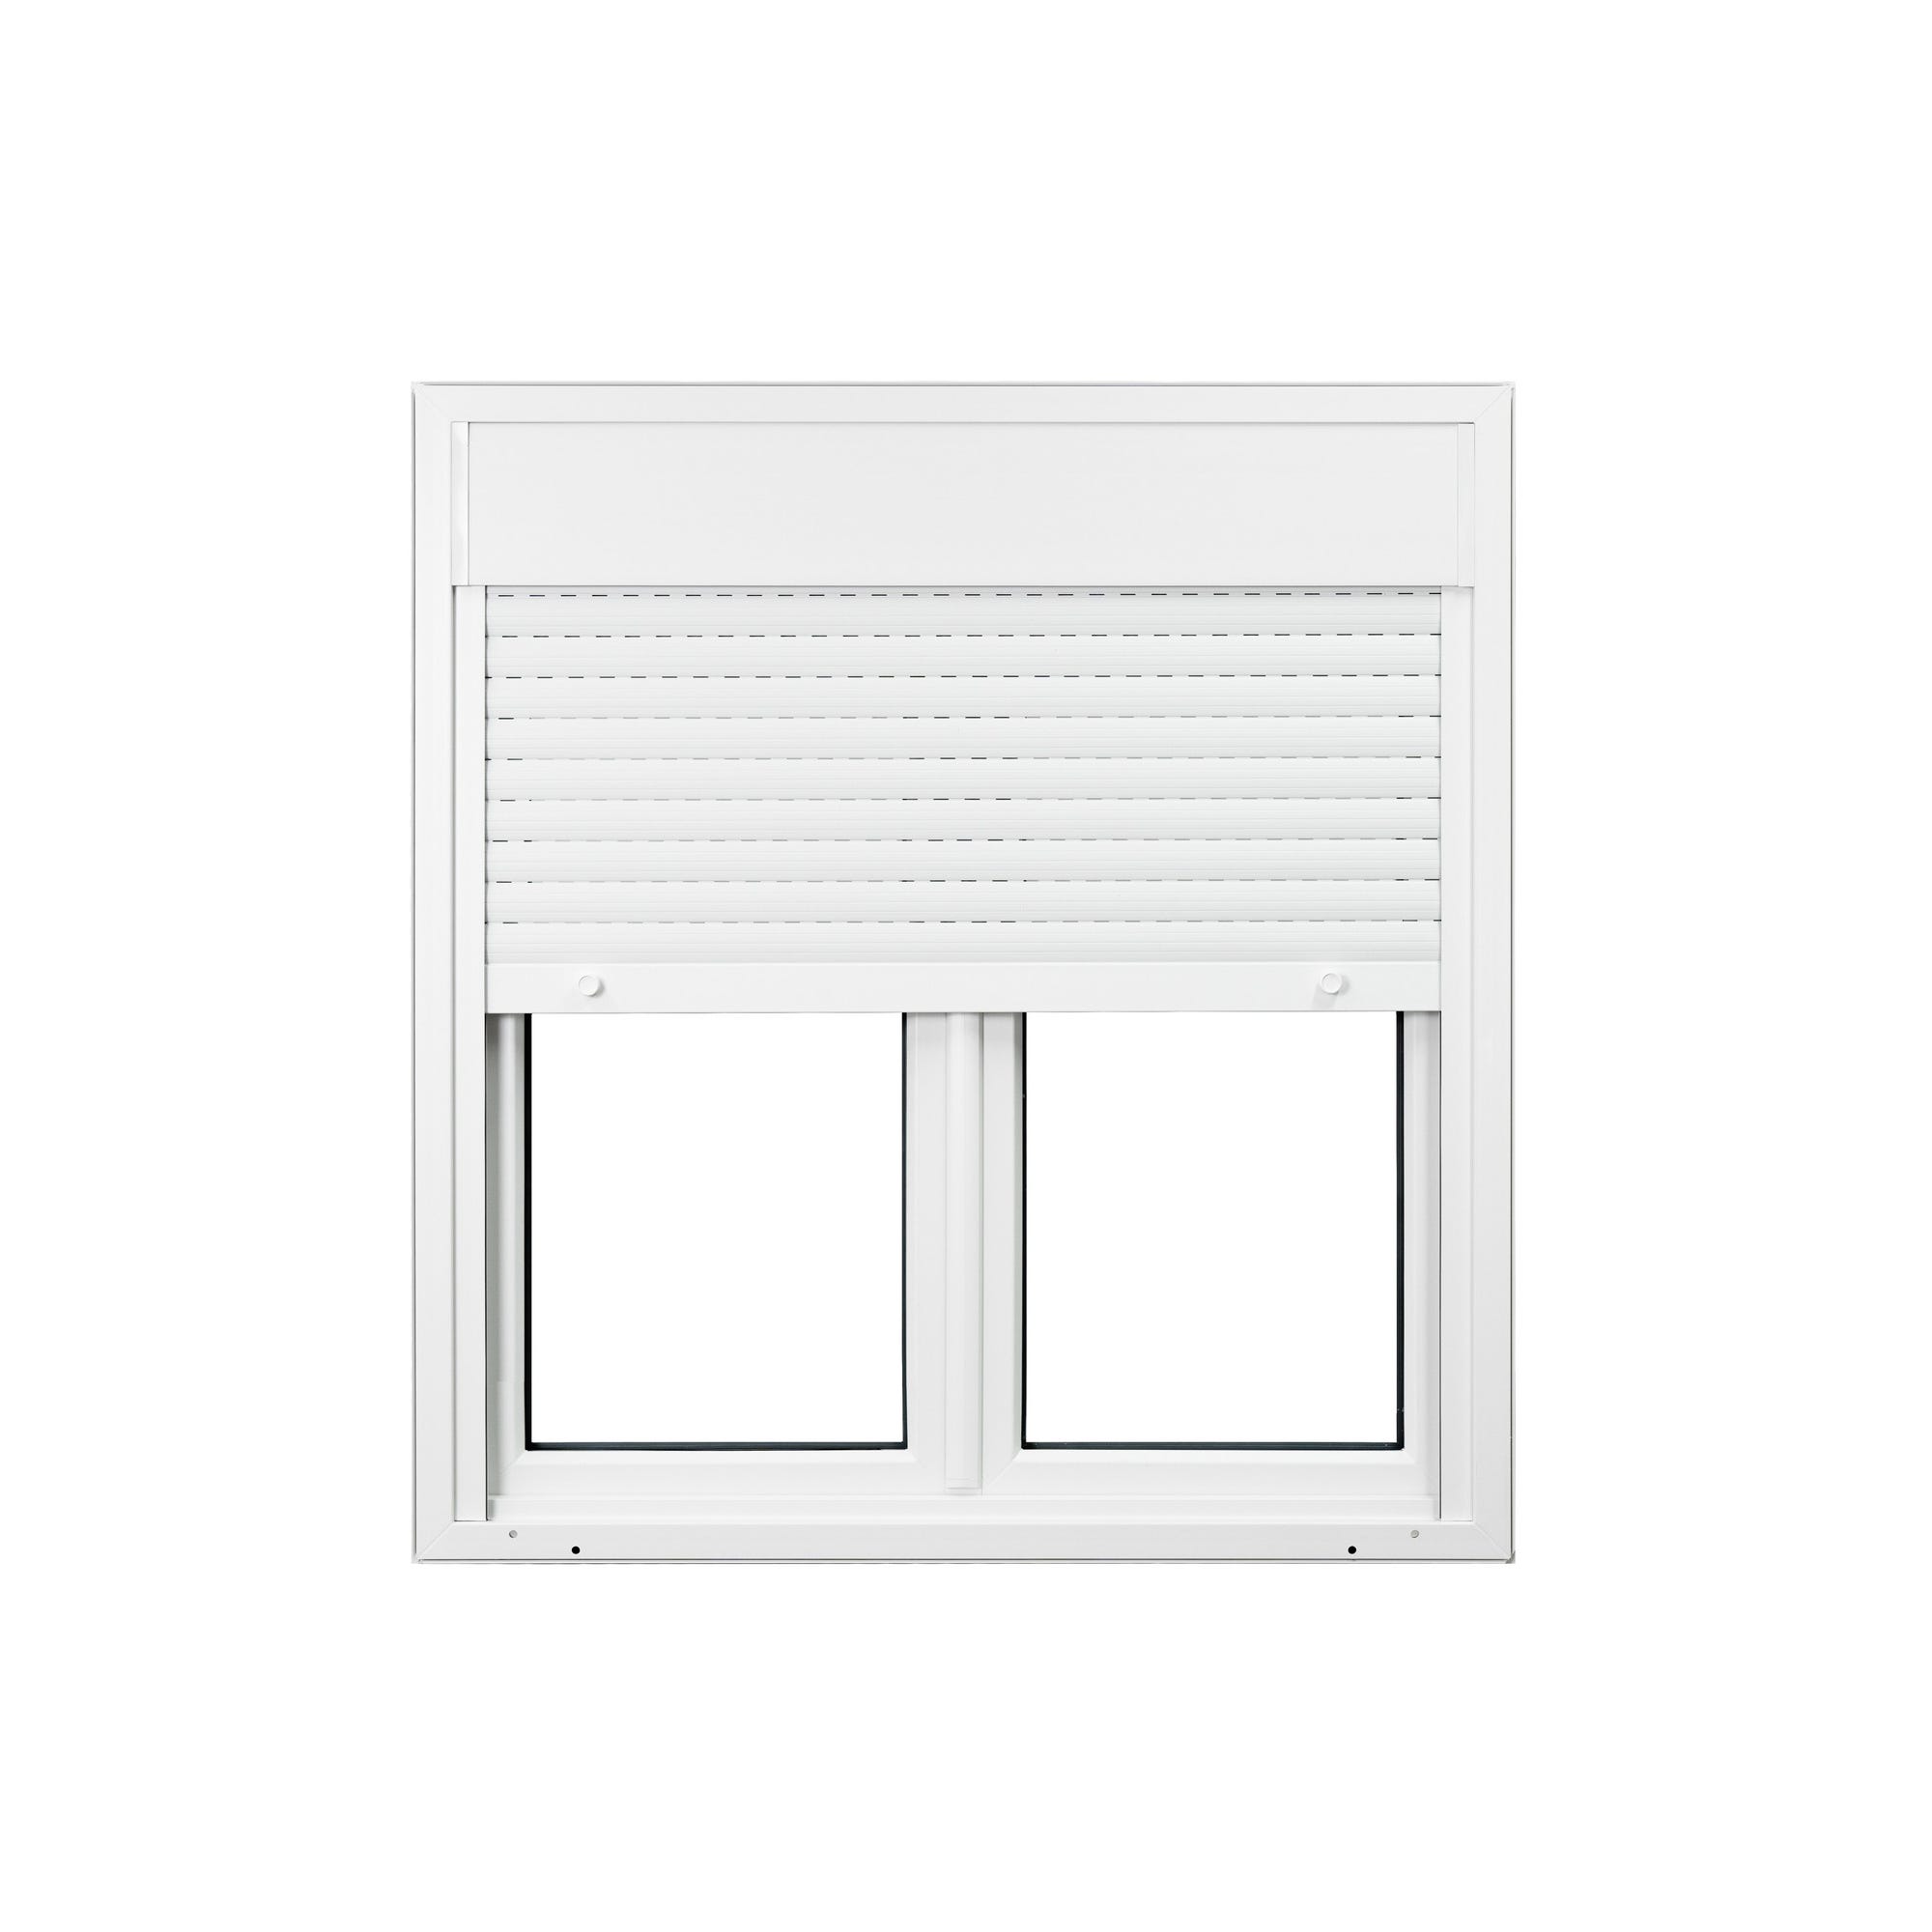 Fenêtre PVC 2 vantaux avec volet roulant intégré monobloc H.135 x l.100 cm - GROSFILLEX 2